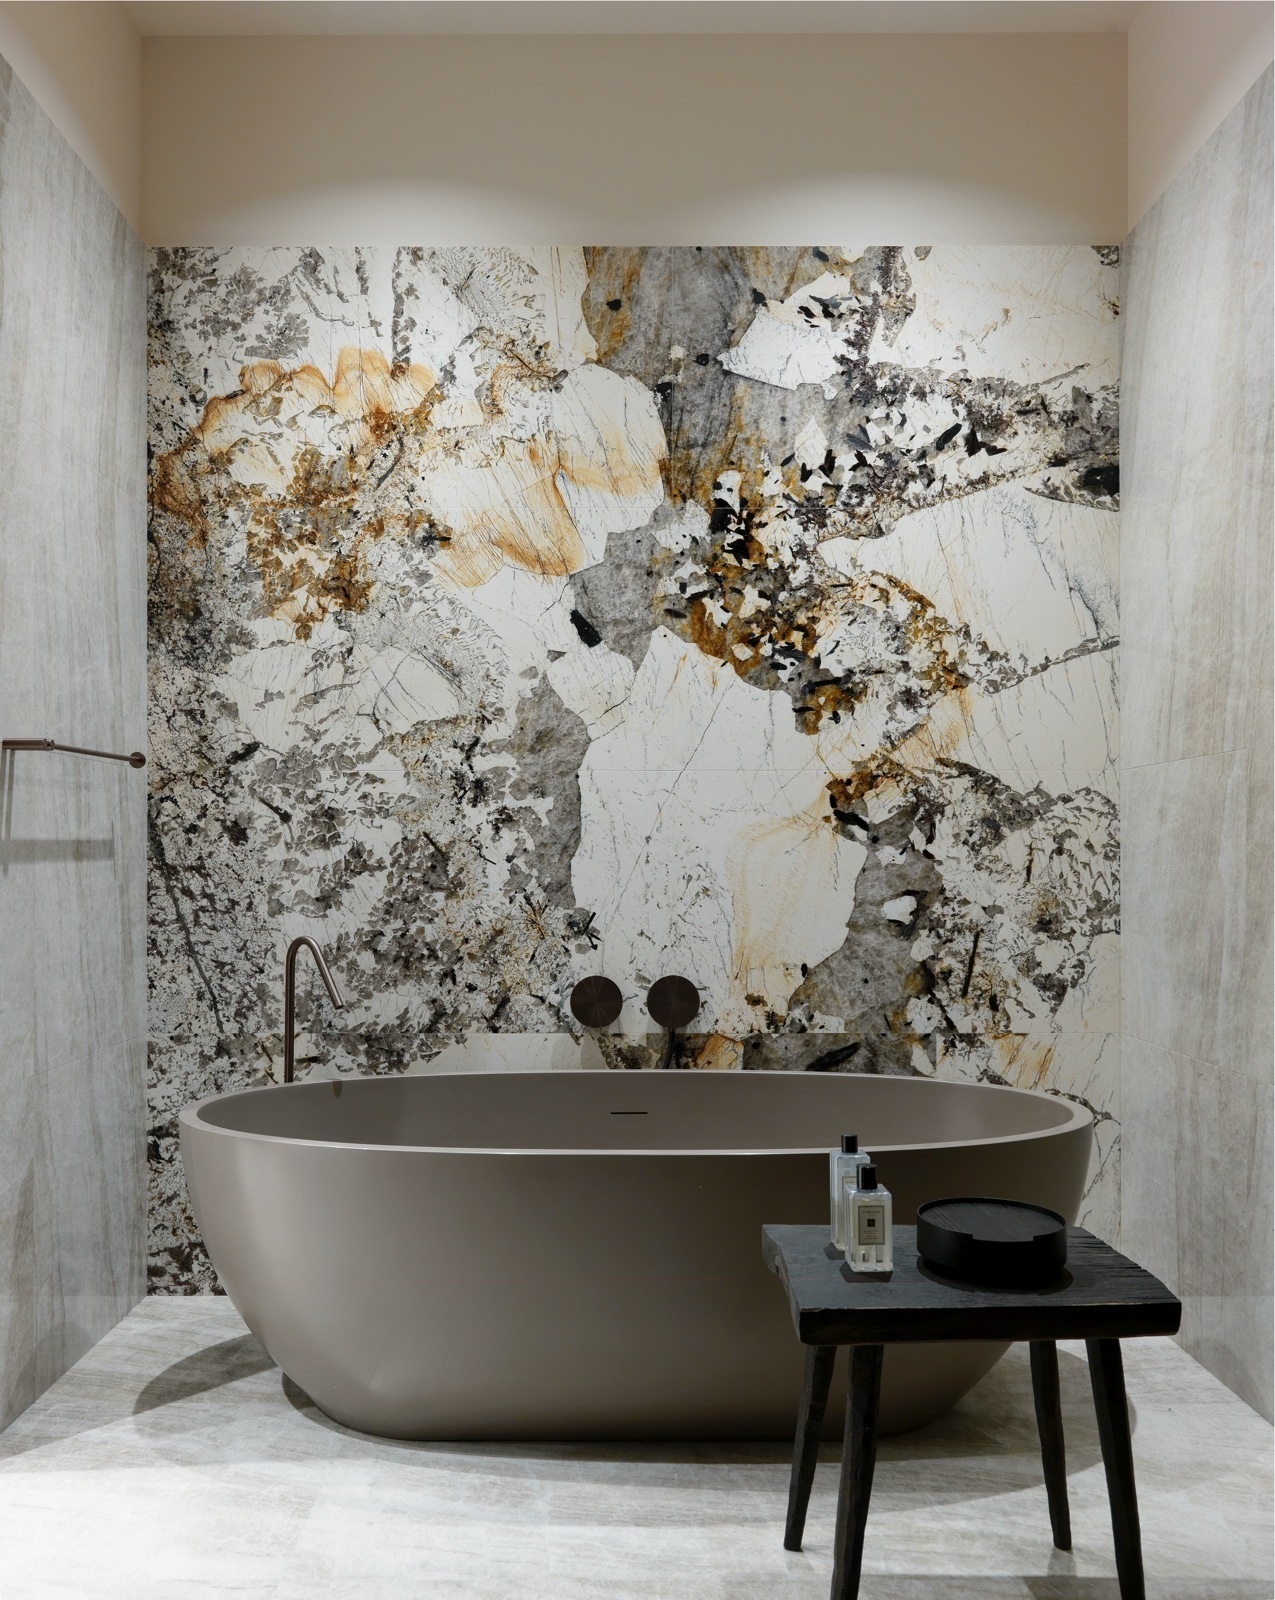 Phòng tắm trong căn hộ của NTK nội thất kiêm họa sĩ Luke Edward Hall với bức tường bằng đá cẩm thạch ghép từ nhiều mảnh khác nhau và nhập khẩu từ Ý, tạo nên điểm nhấn nổi bật, đắt giá ở ngay vị trí trung tâm.